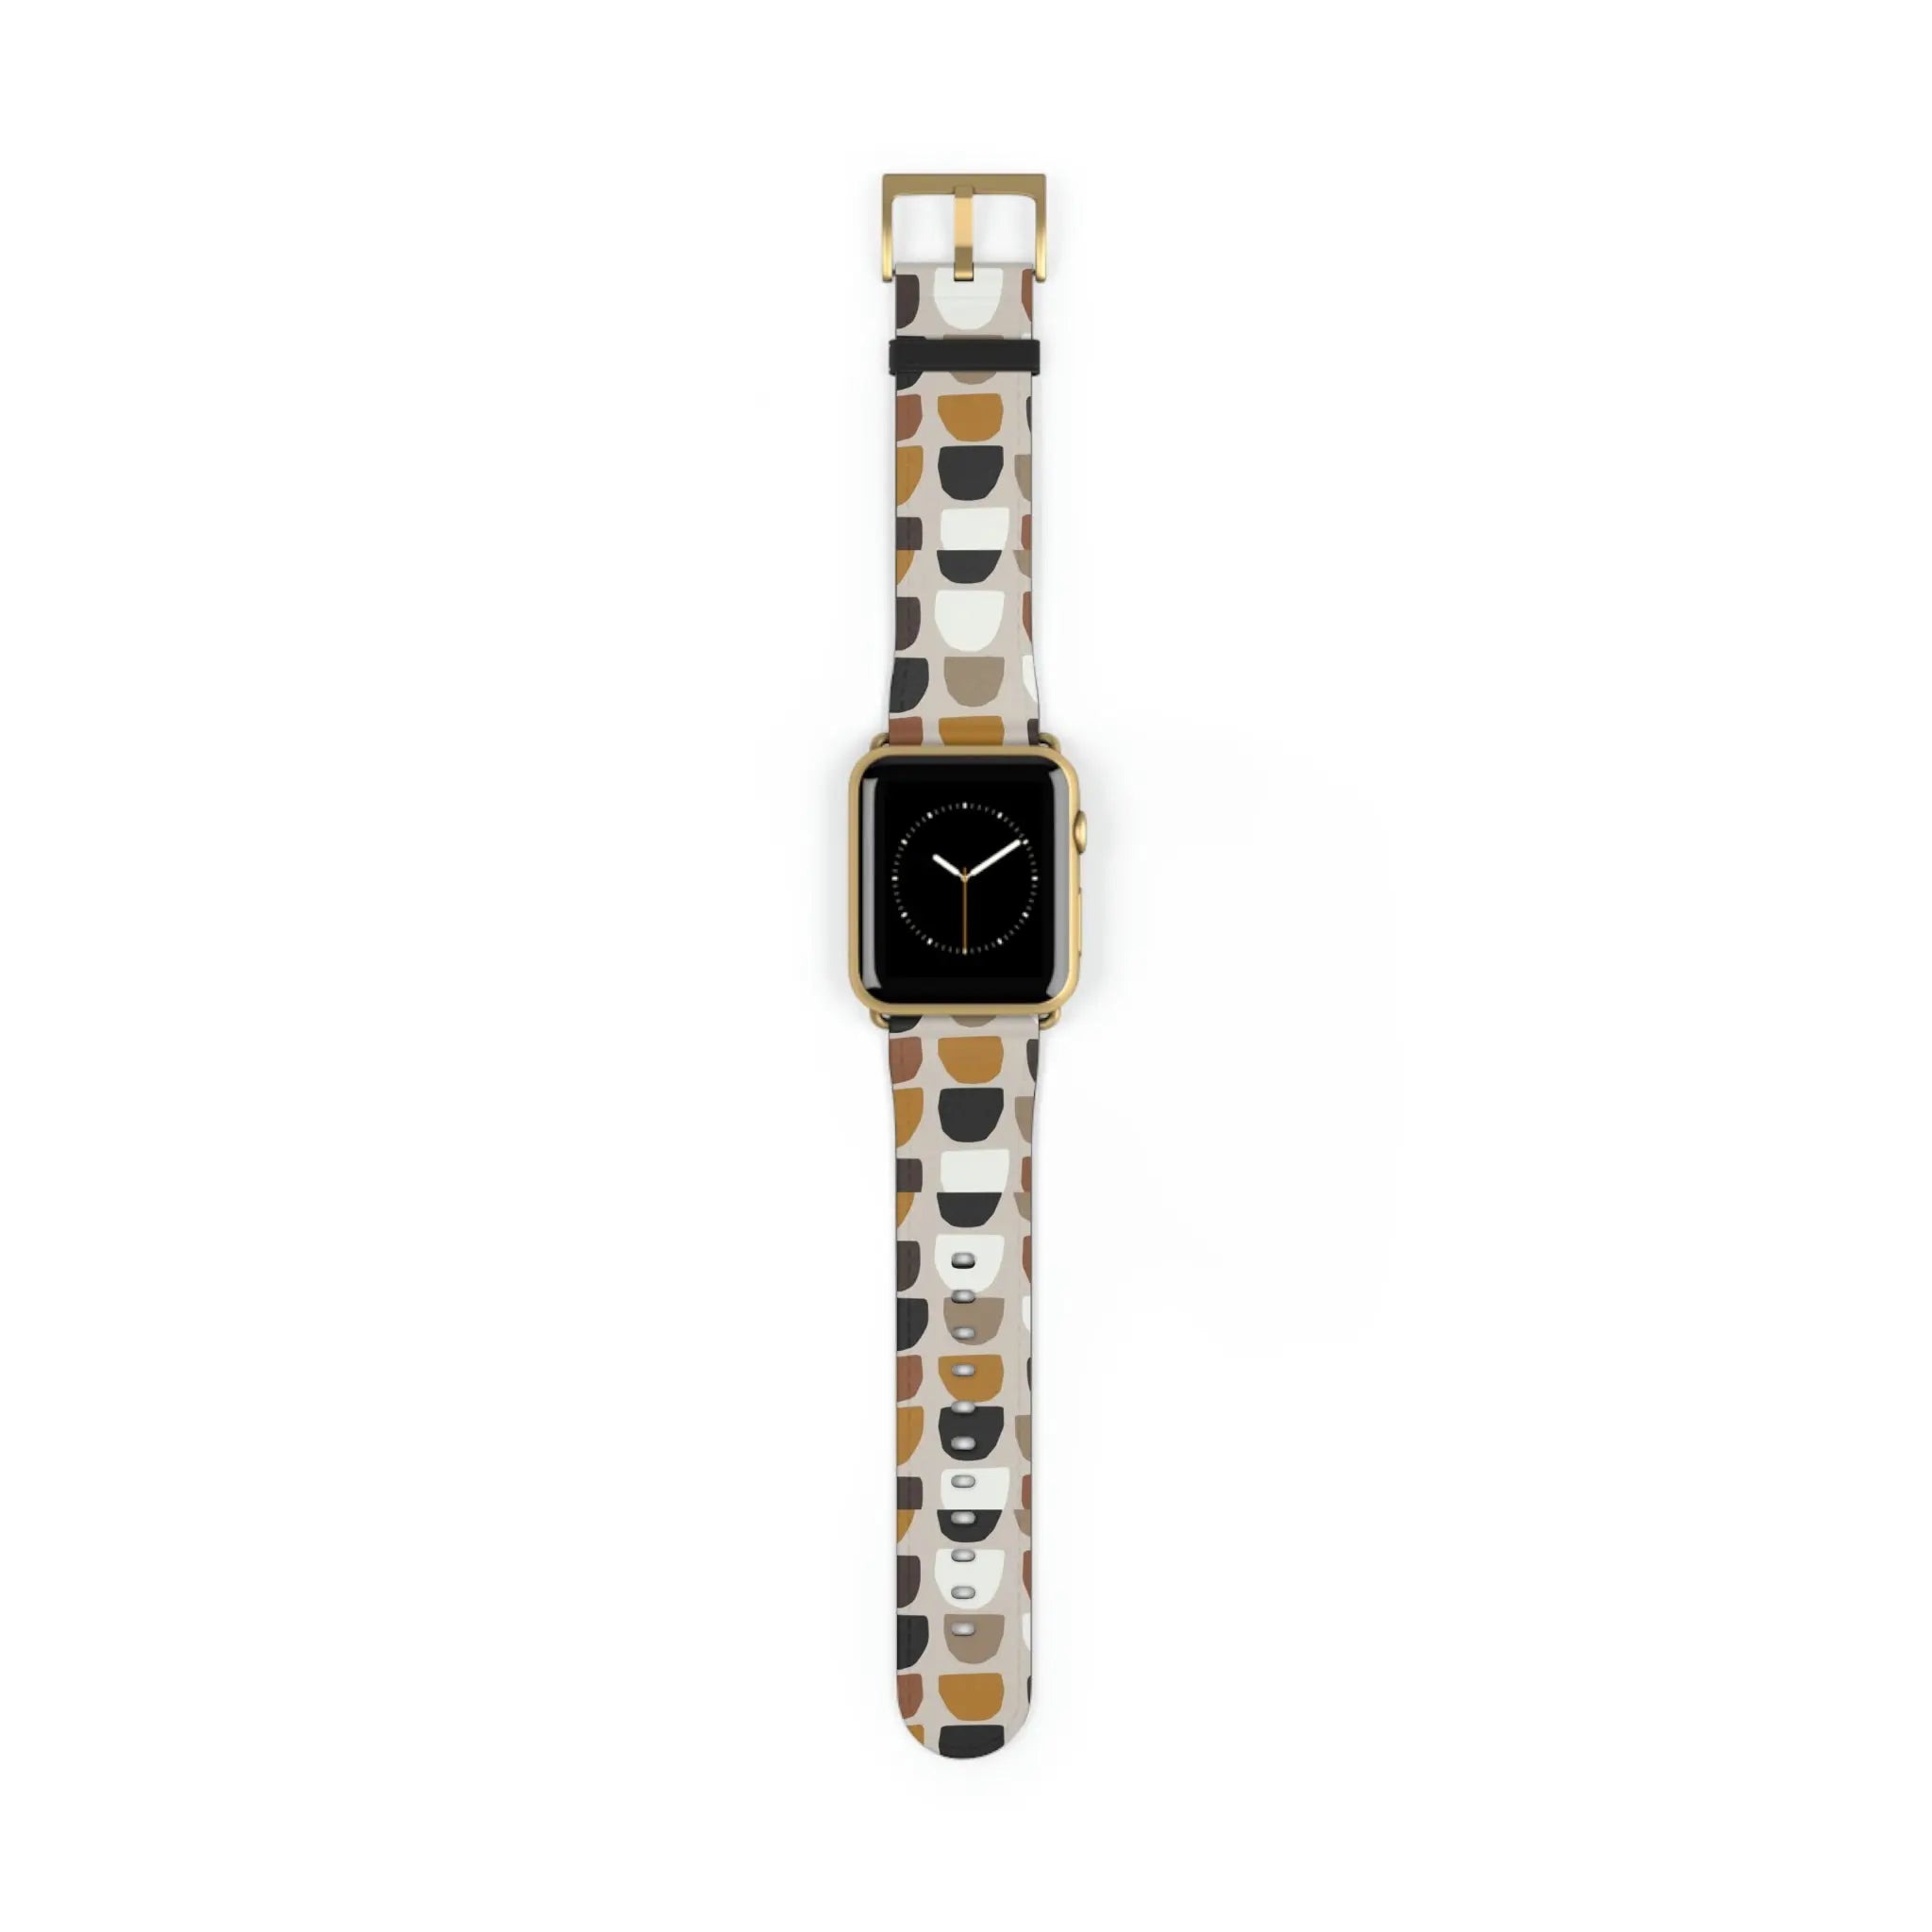  Boho (Khaki) Apple Watch Band Accessories42-45mmGoldMatte